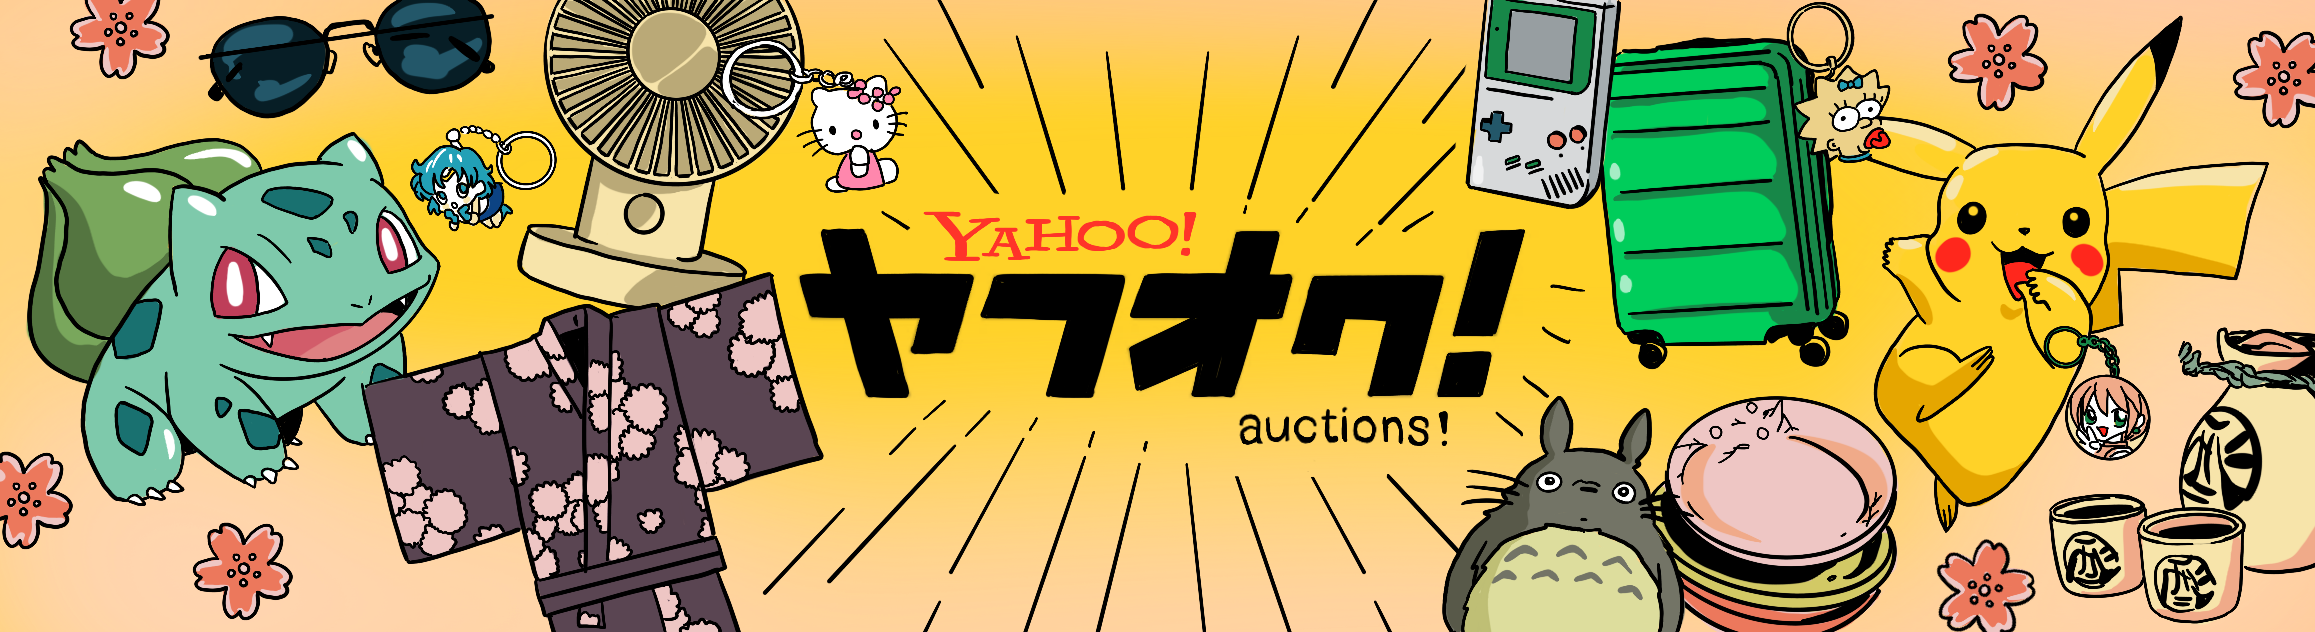 Leilões no Yahoo! Auctions - Tudo o que você precisa saber 